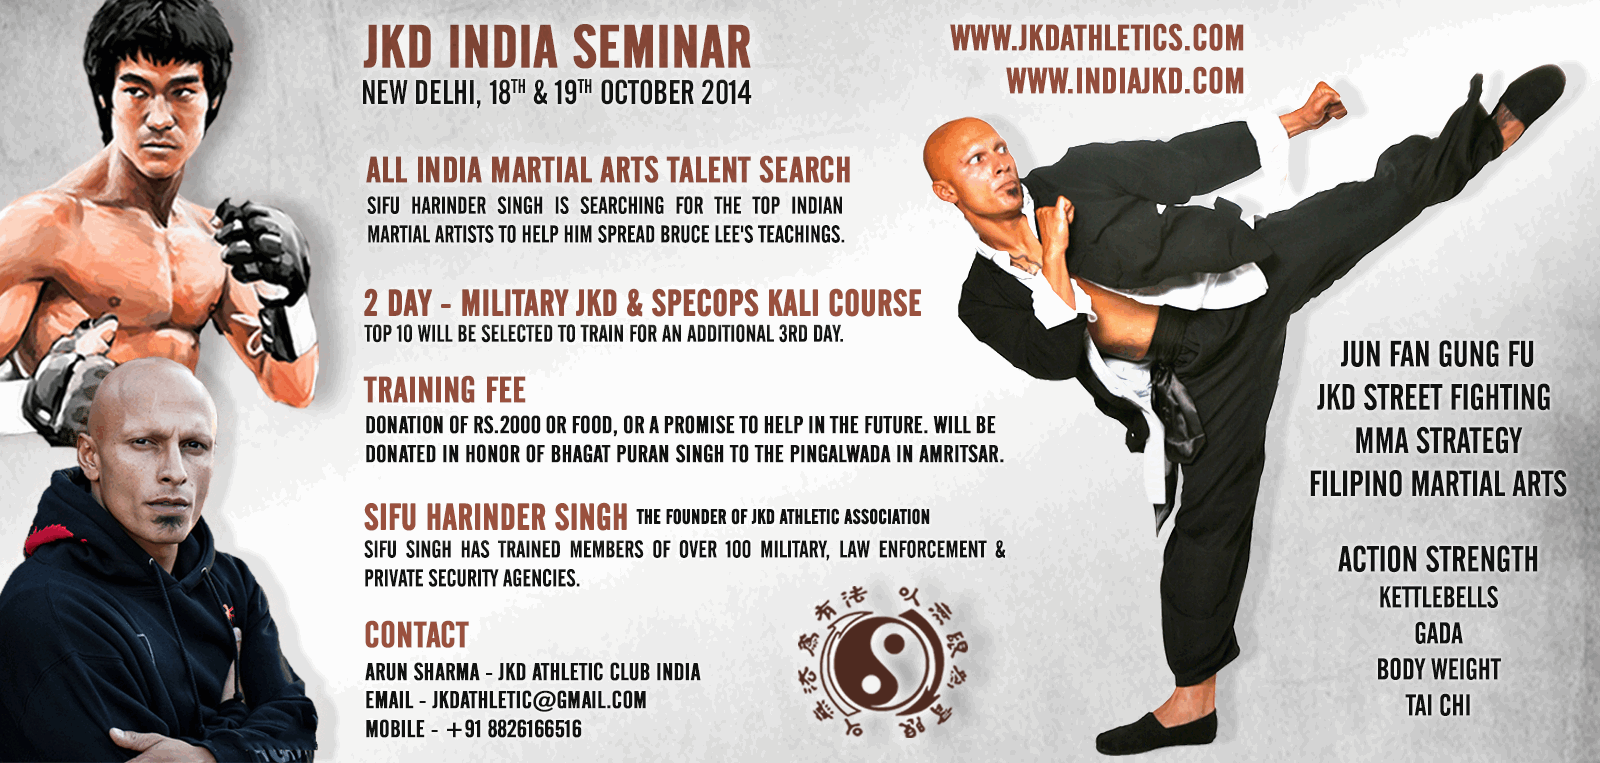 JKD-India-Seminar-Sifu-Singh